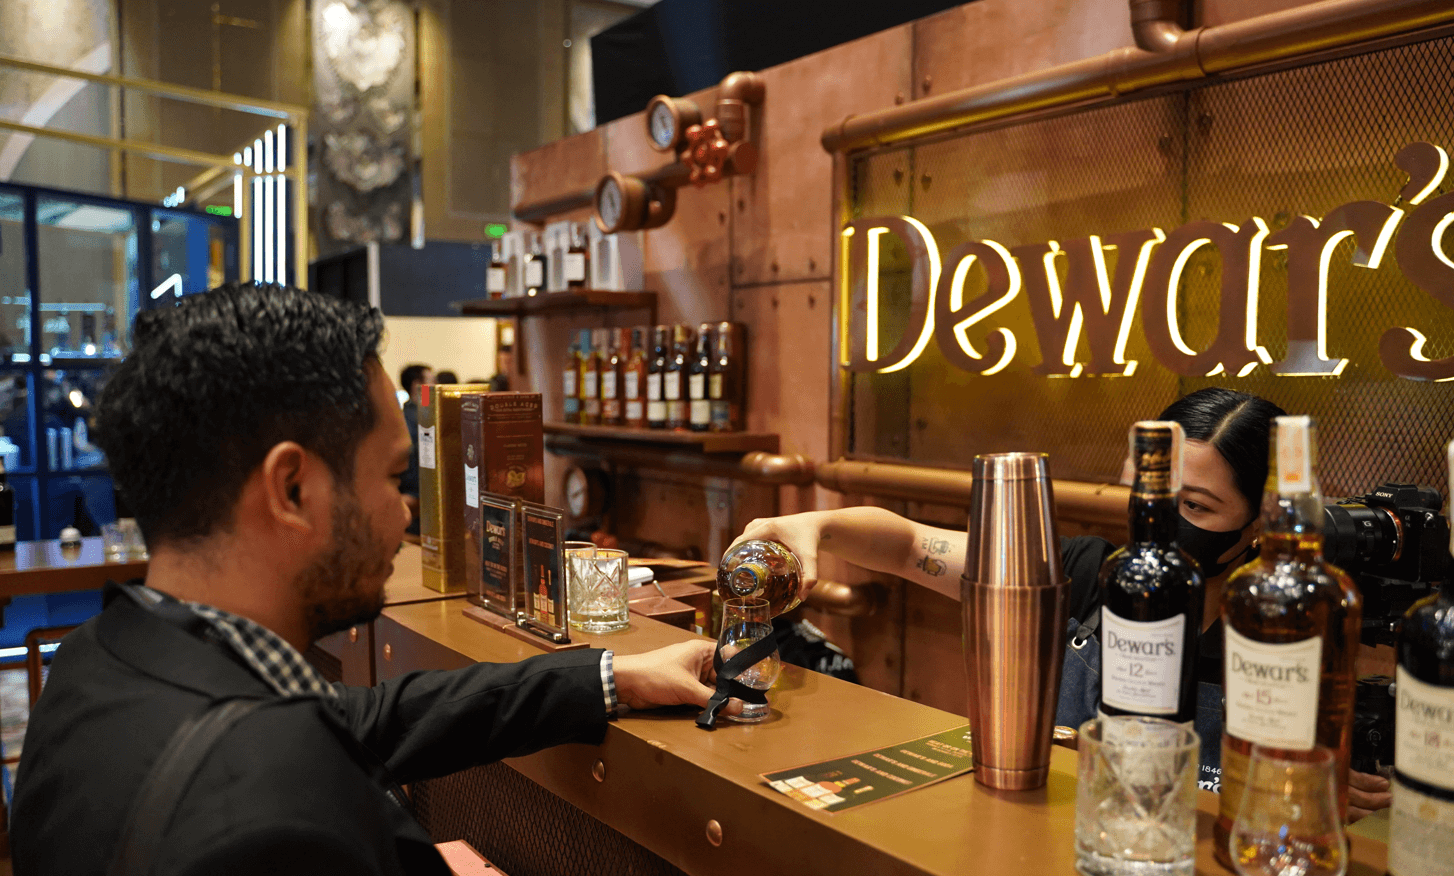 Dewar's distillery